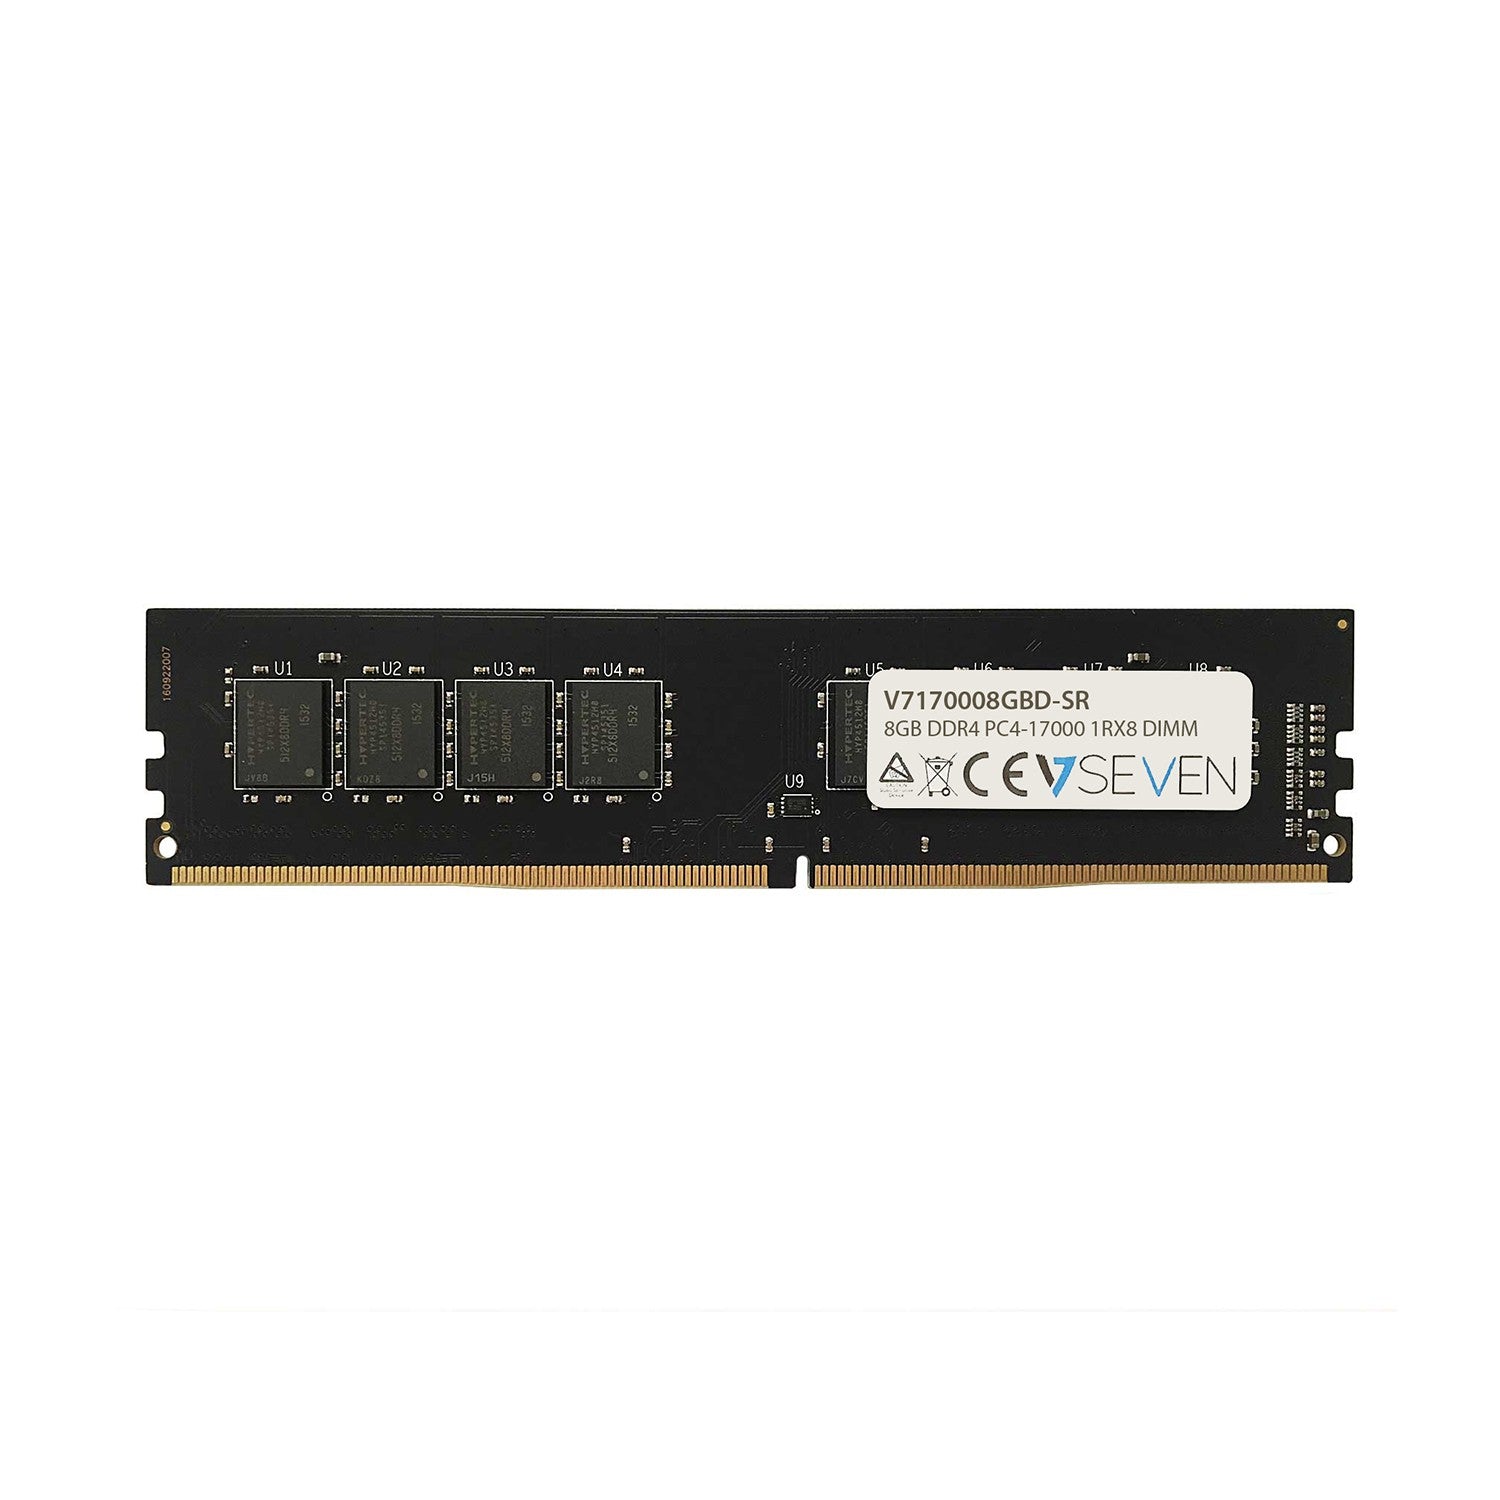 V7 8GB DDR4 PC4-17000 - 2133MHz DIMM Desktop Memory Module - V7170008GBD-SR